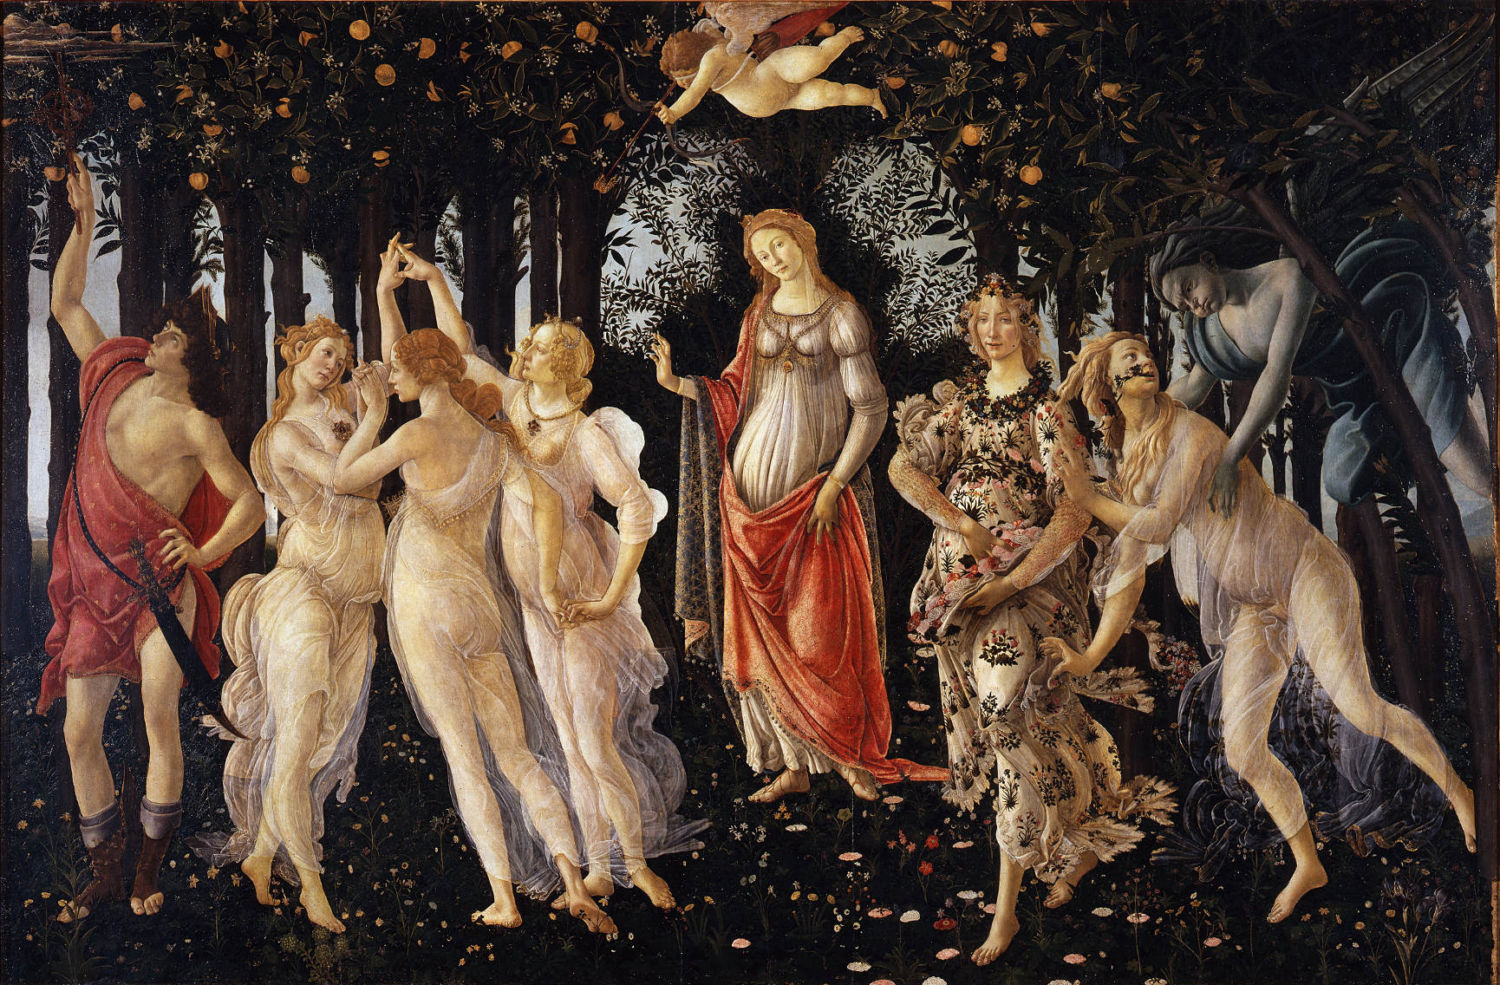 https://latuaitalia.ru/wp-content/uploads/2017/01/Botticelli-primavera-1500x985.jpg